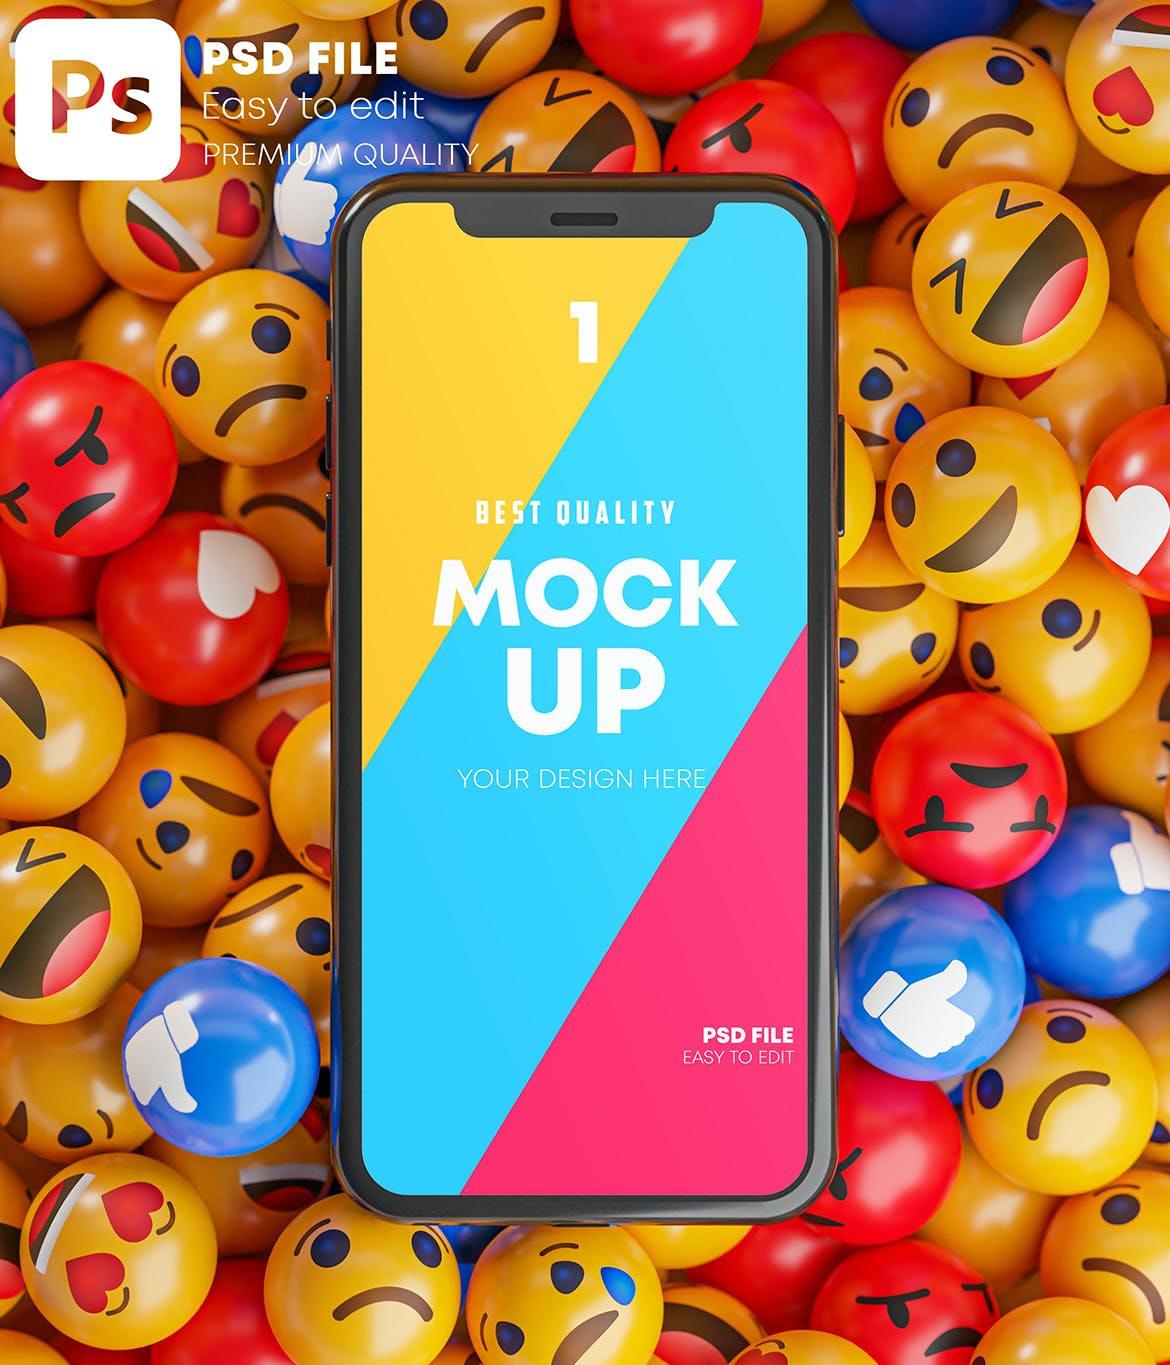 智能手机表情符号元素样机素材包 Smartphone Emoji Mockup Pack设计素材模板